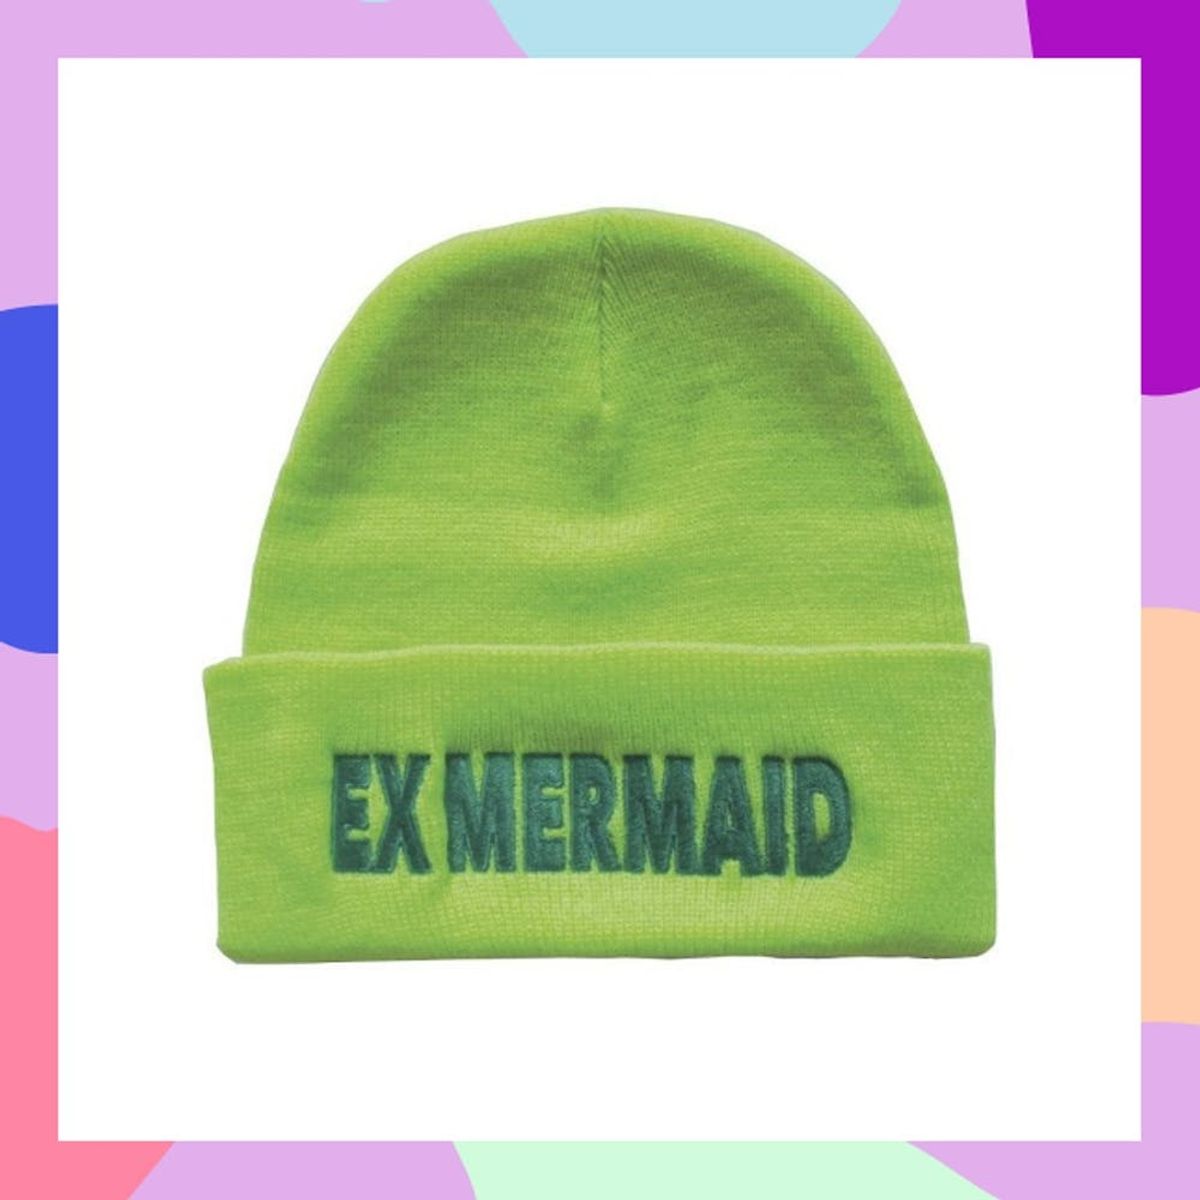 This green "Ex-Mermaid" beanie highlights our mermaid gift ideas